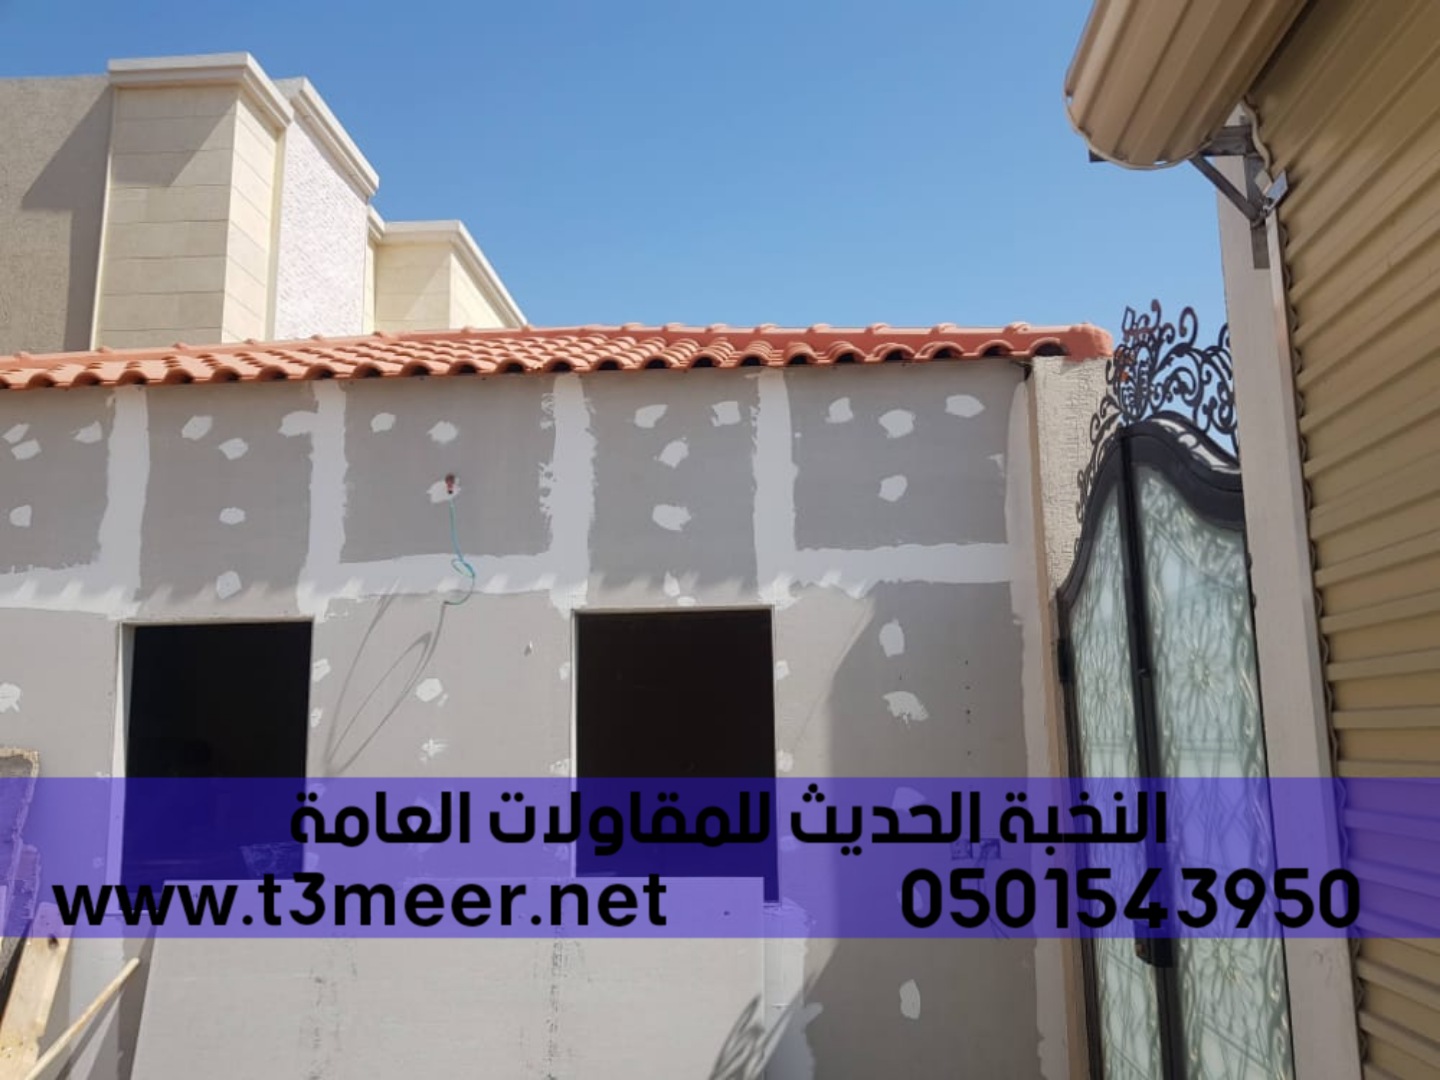 بناء مجلس و ملحق خارجي في جدة,0501543950 P_26033lcka7